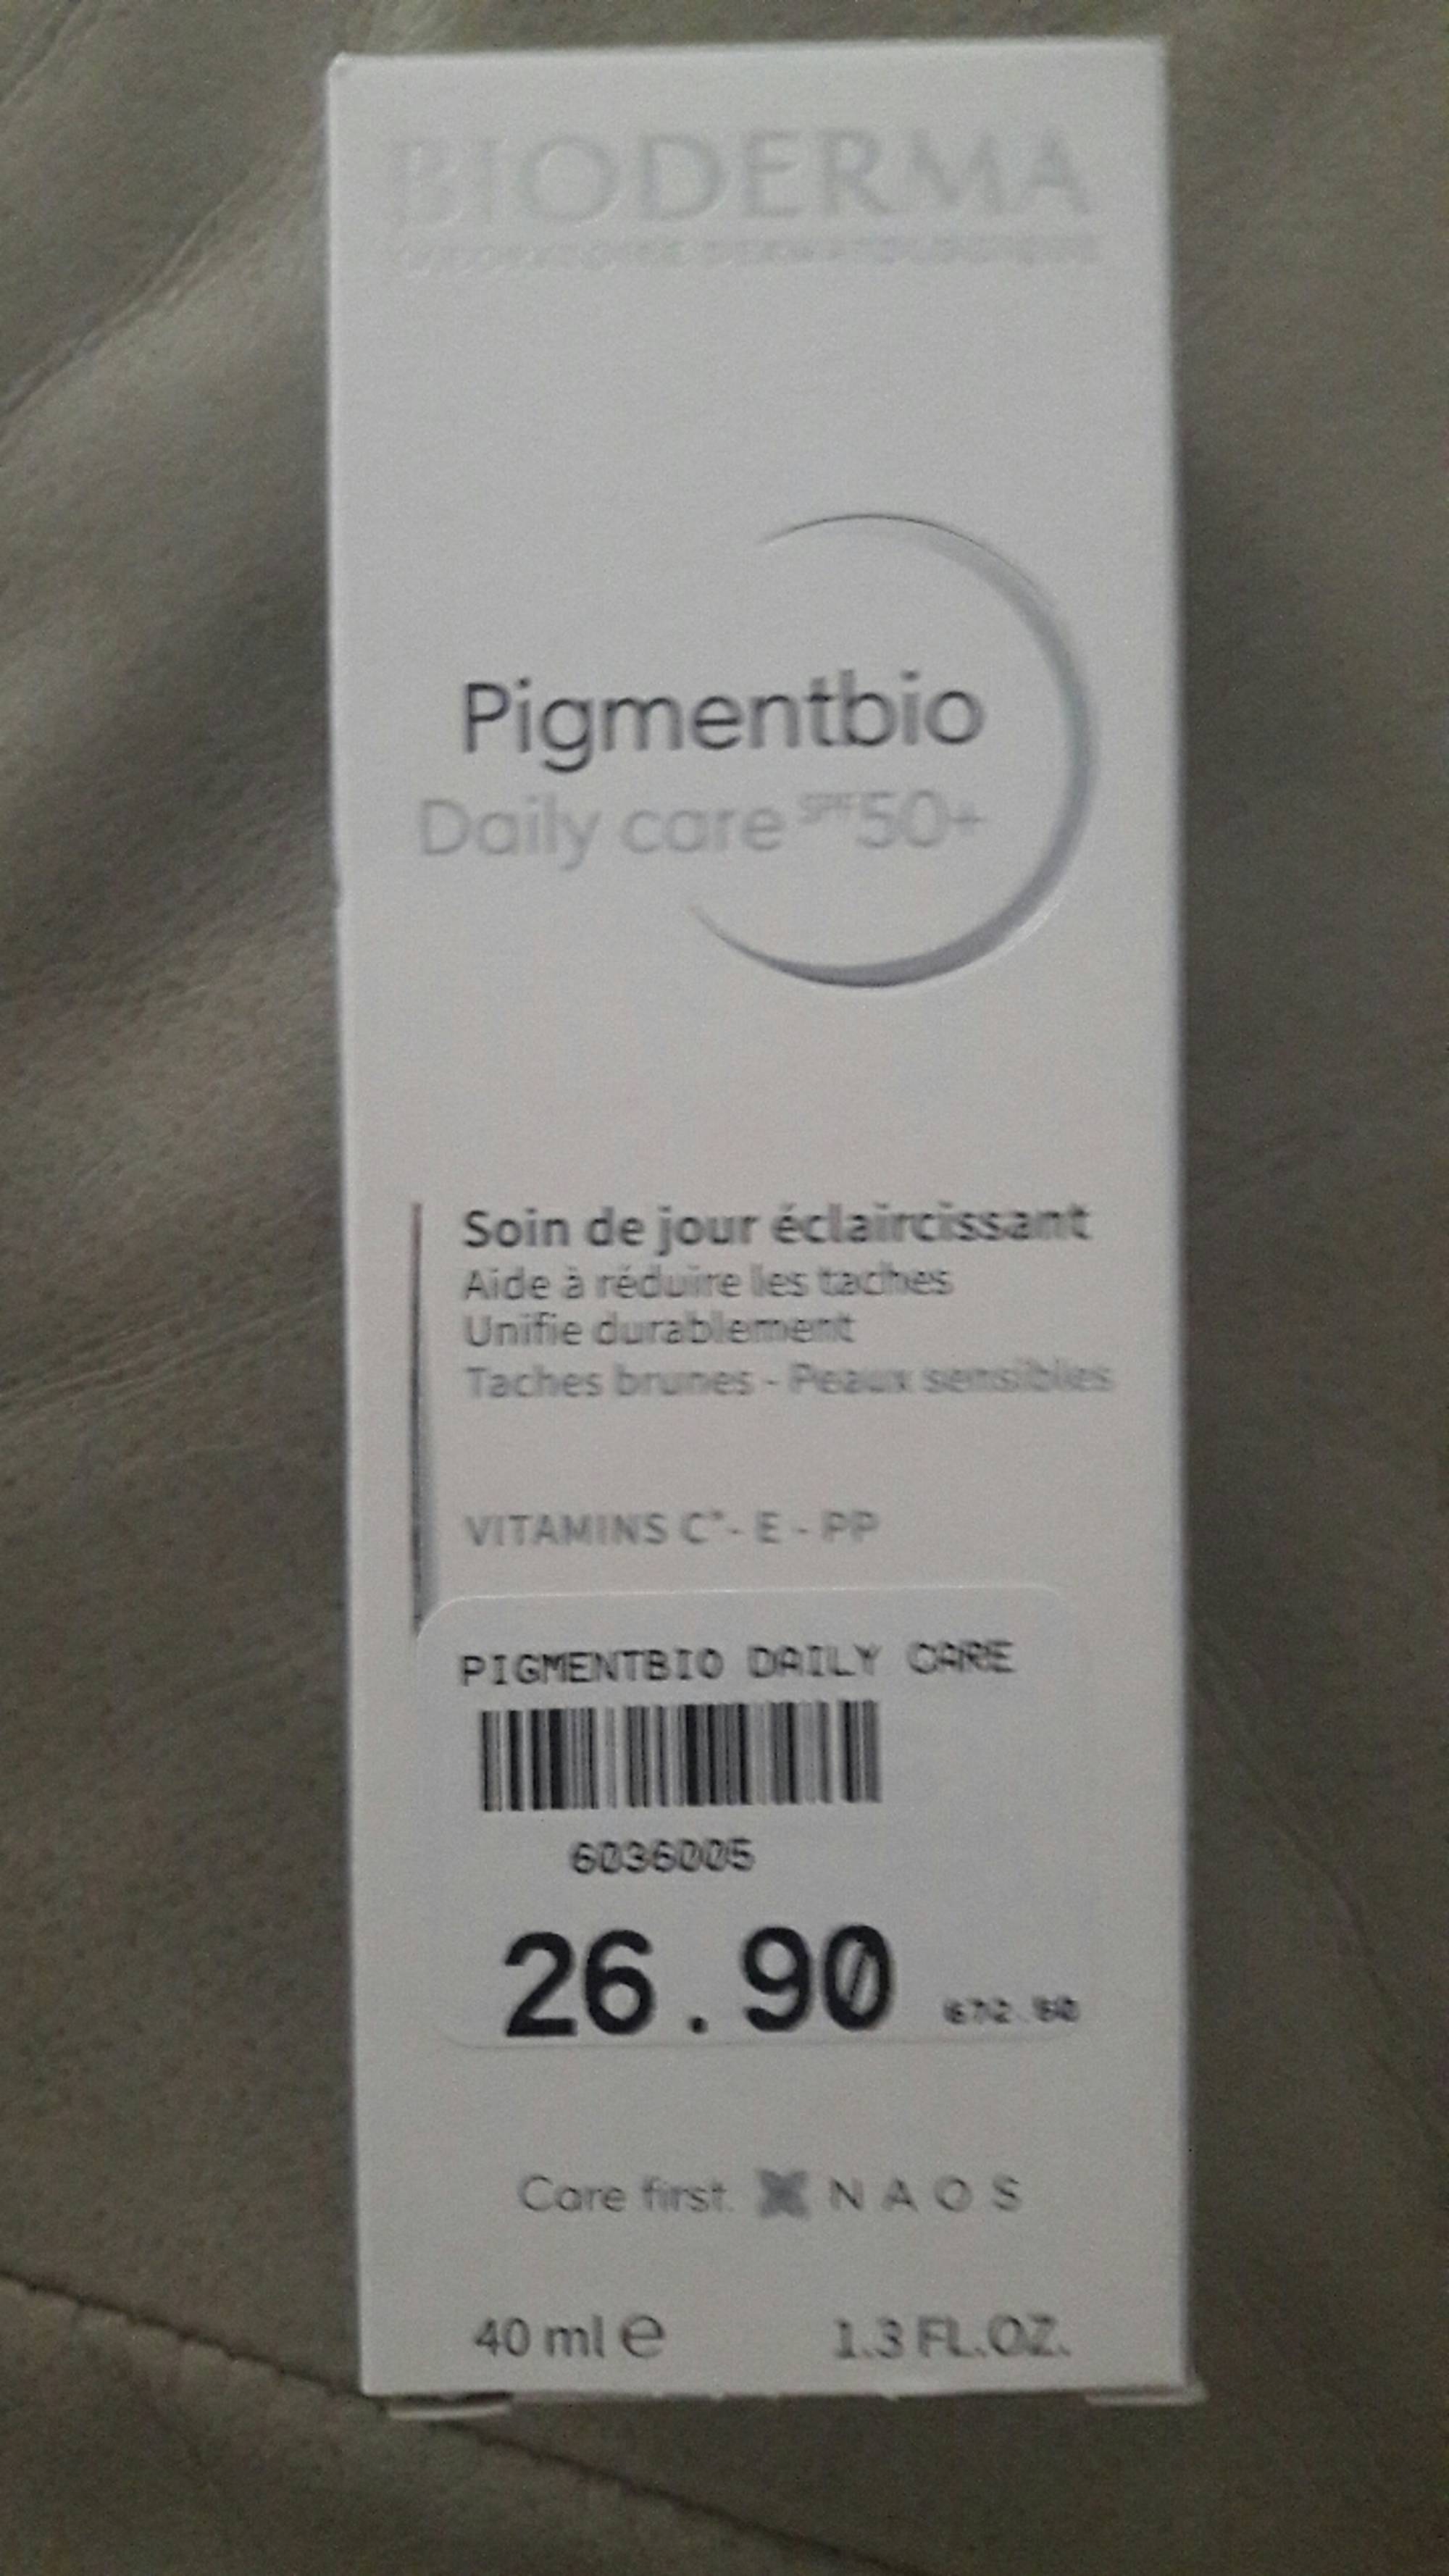 BIODERMA - Pigmentbio - Daily care SPF 50+, soin de jour éclaircissant